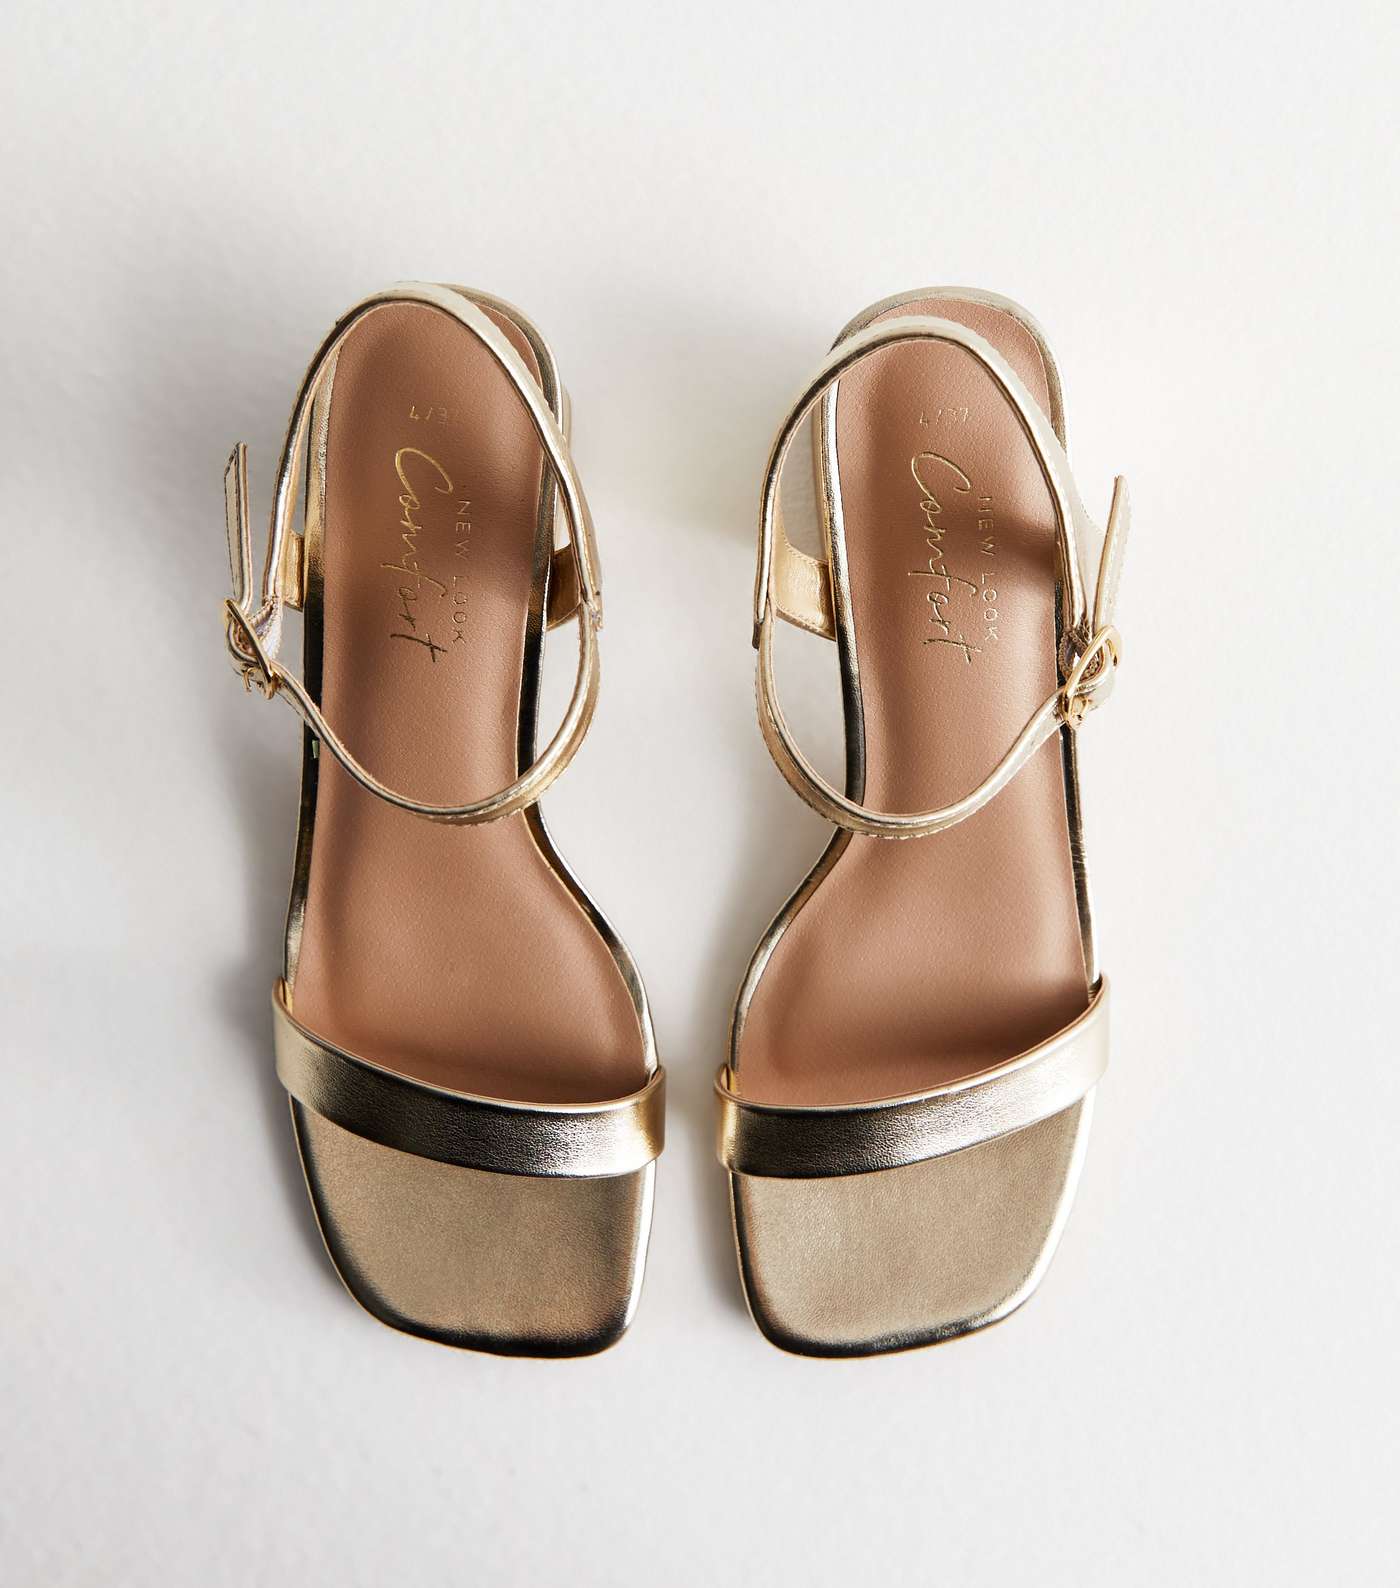 Gold Leather-Look 2 Part Block Heel Sandals Image 3